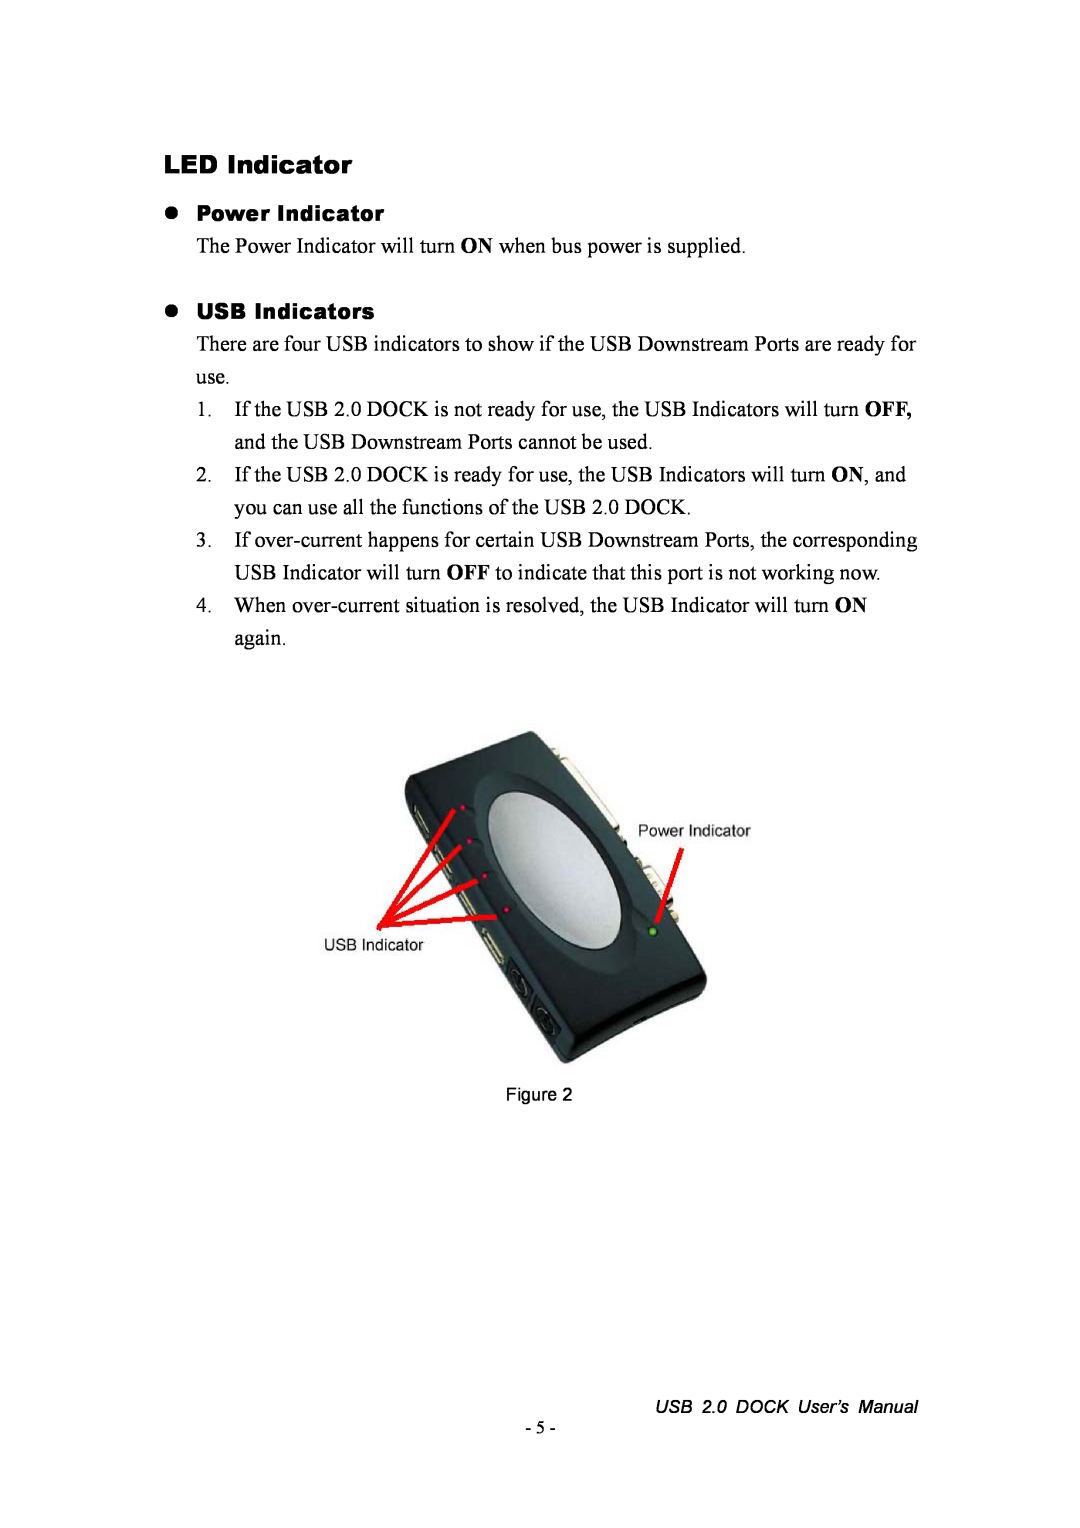 Jameco Electronics 527822 manual LED Indicator, Power Indicator, USB Indicators 